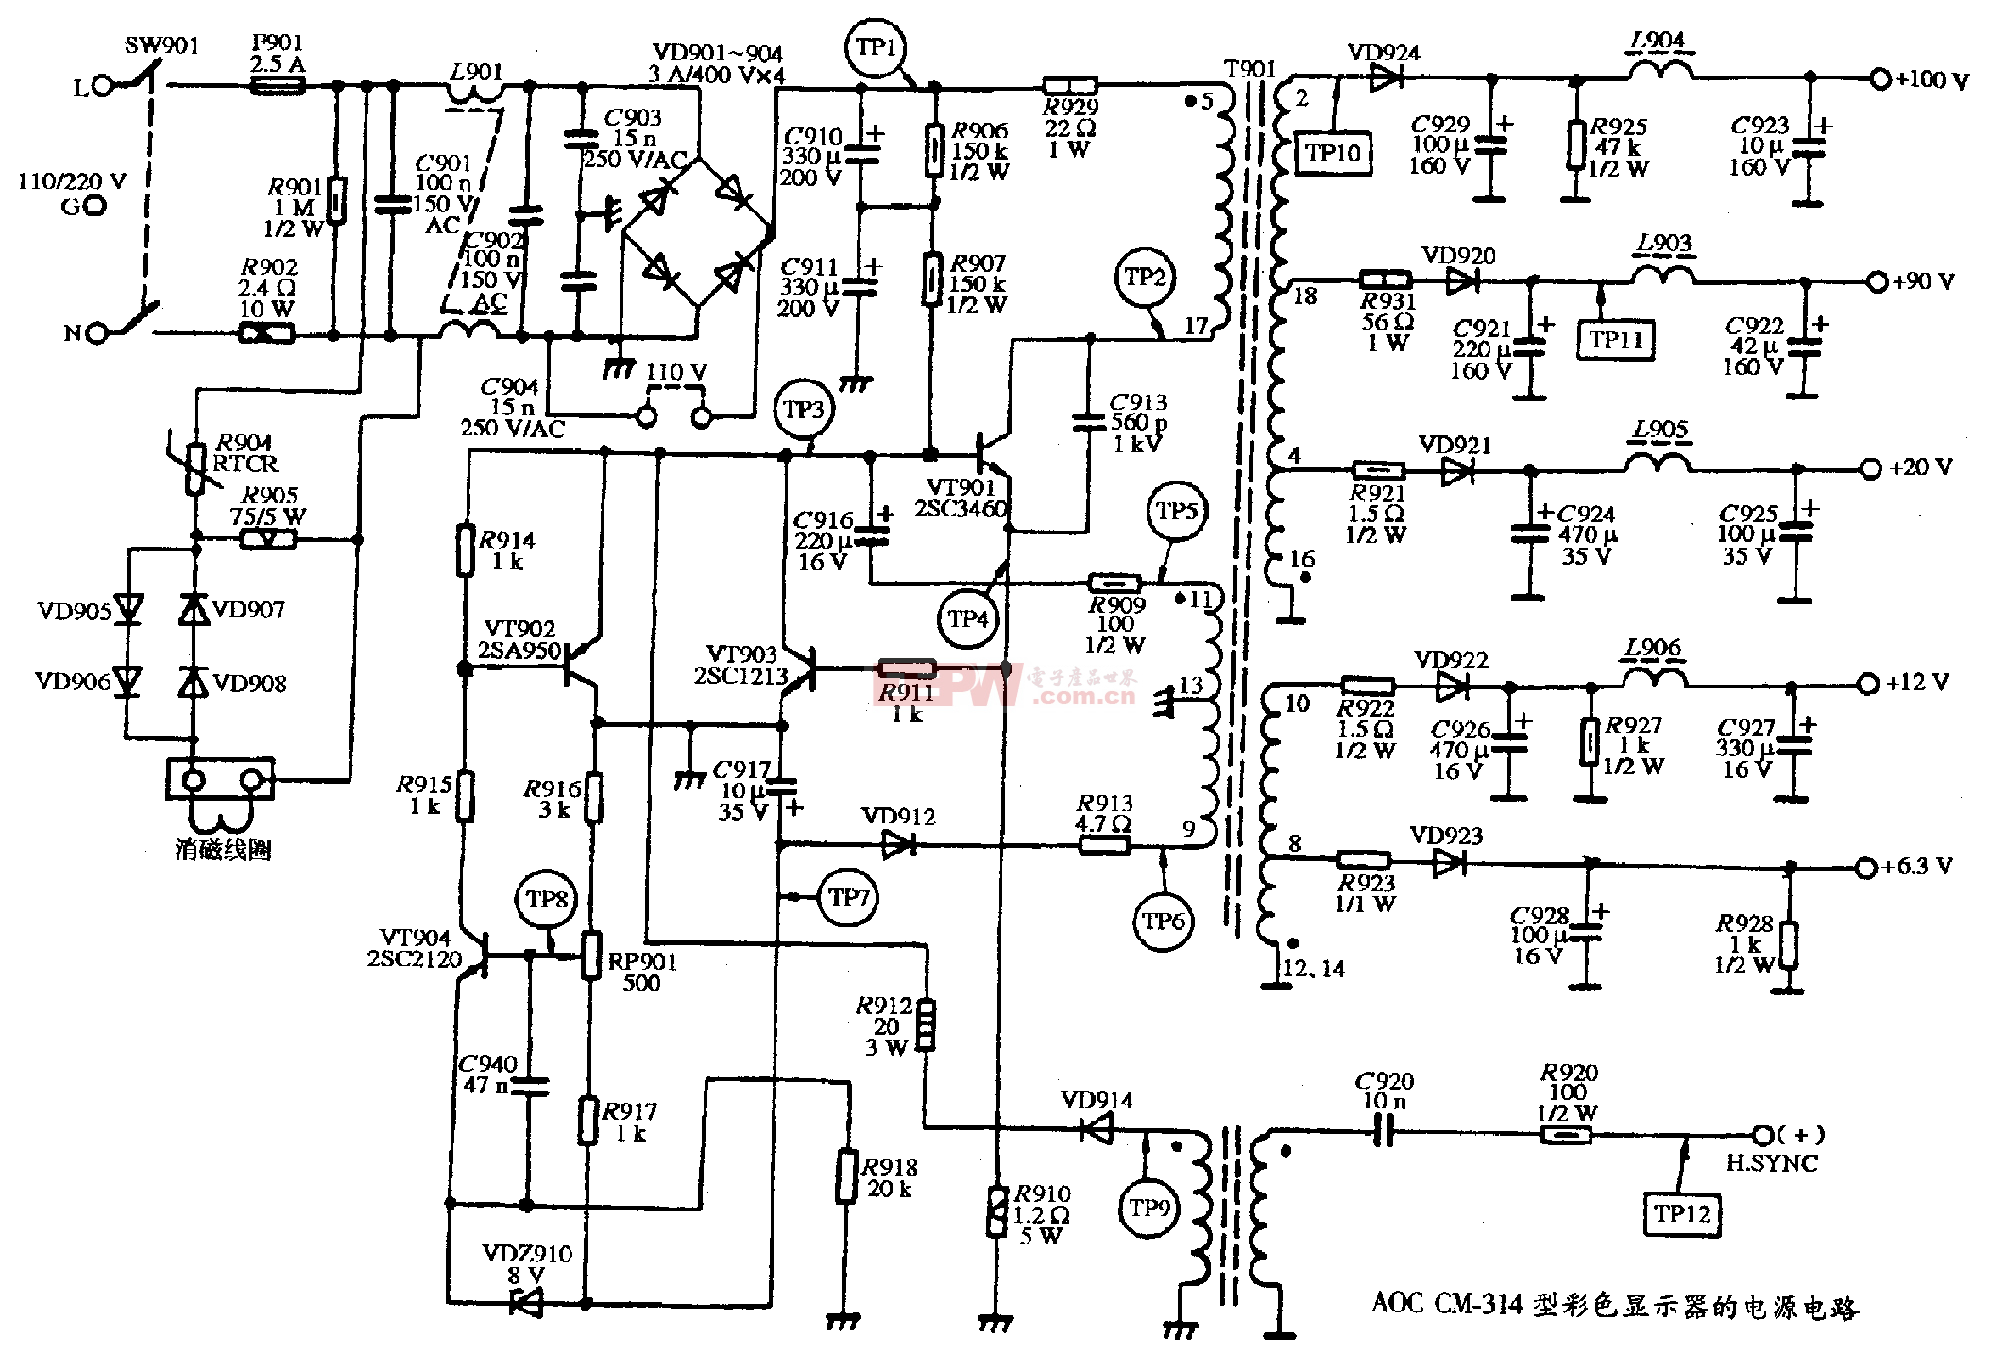 3、AOC CM-314型彩色显示器的电源电路图